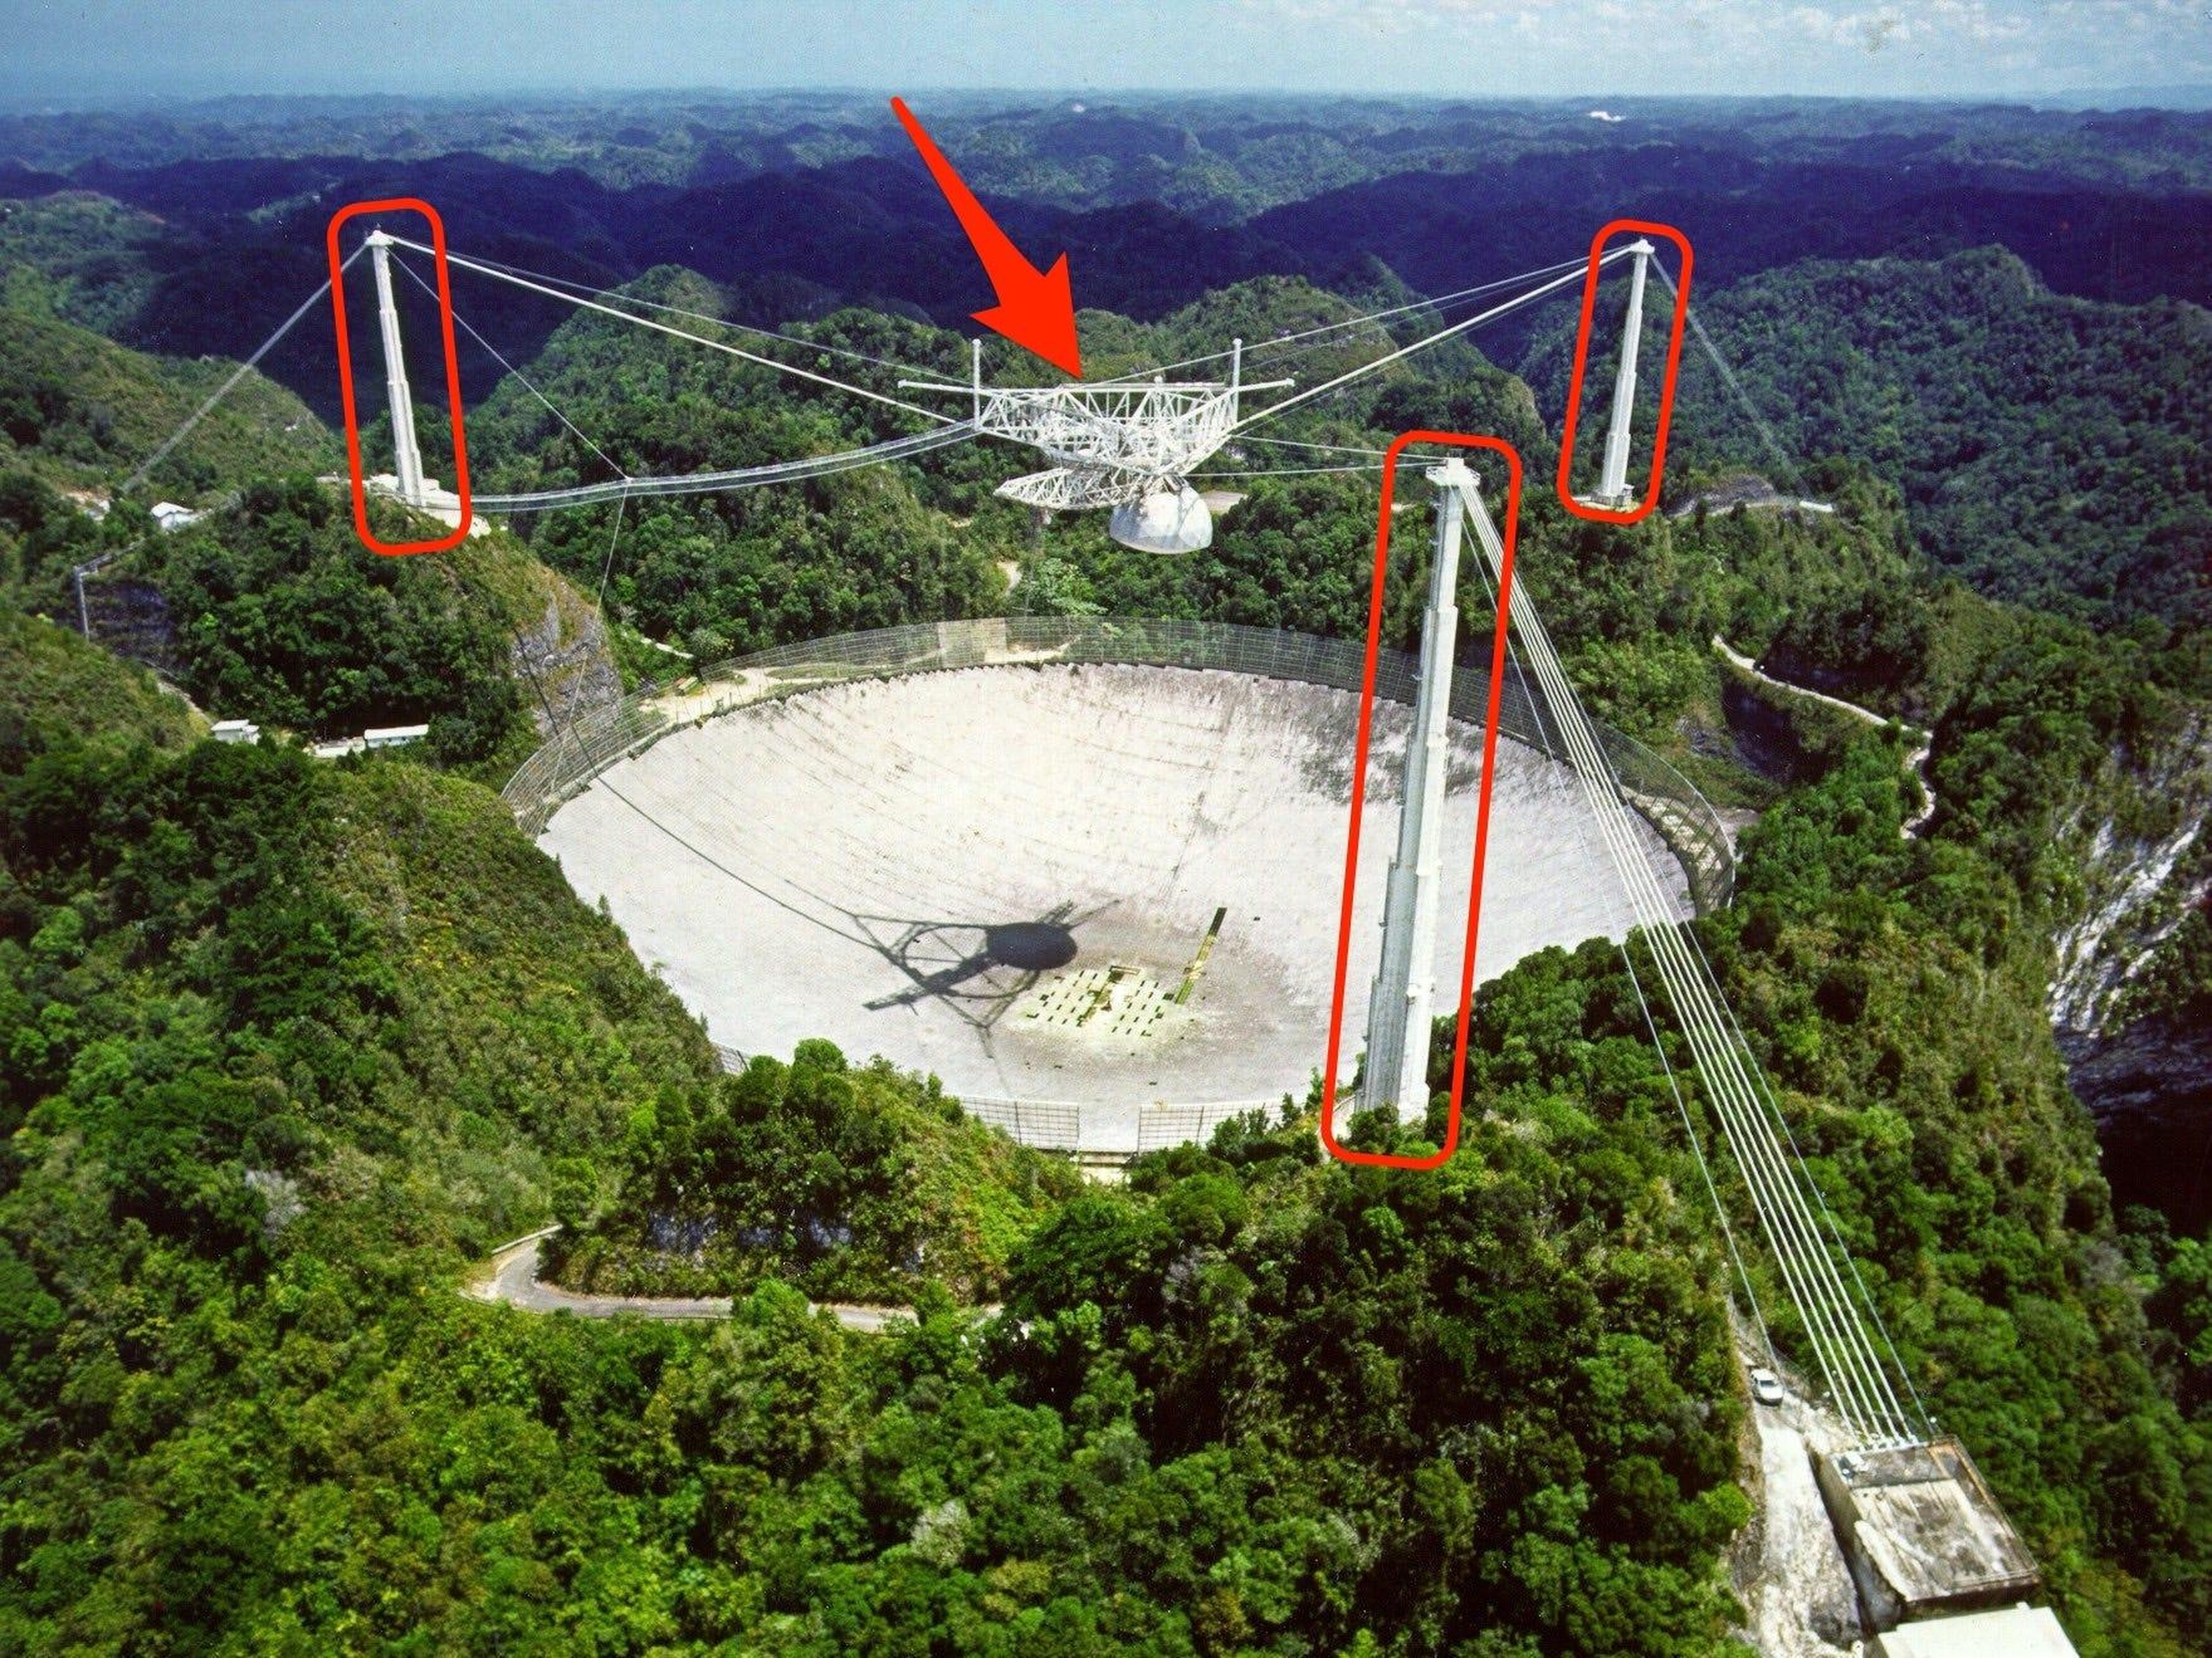 La plataforma de radio-antena del Observatorio de Arecibo en Puerto Rico, así como tres torres de apoyo, podrían colapsar catastróficamente.